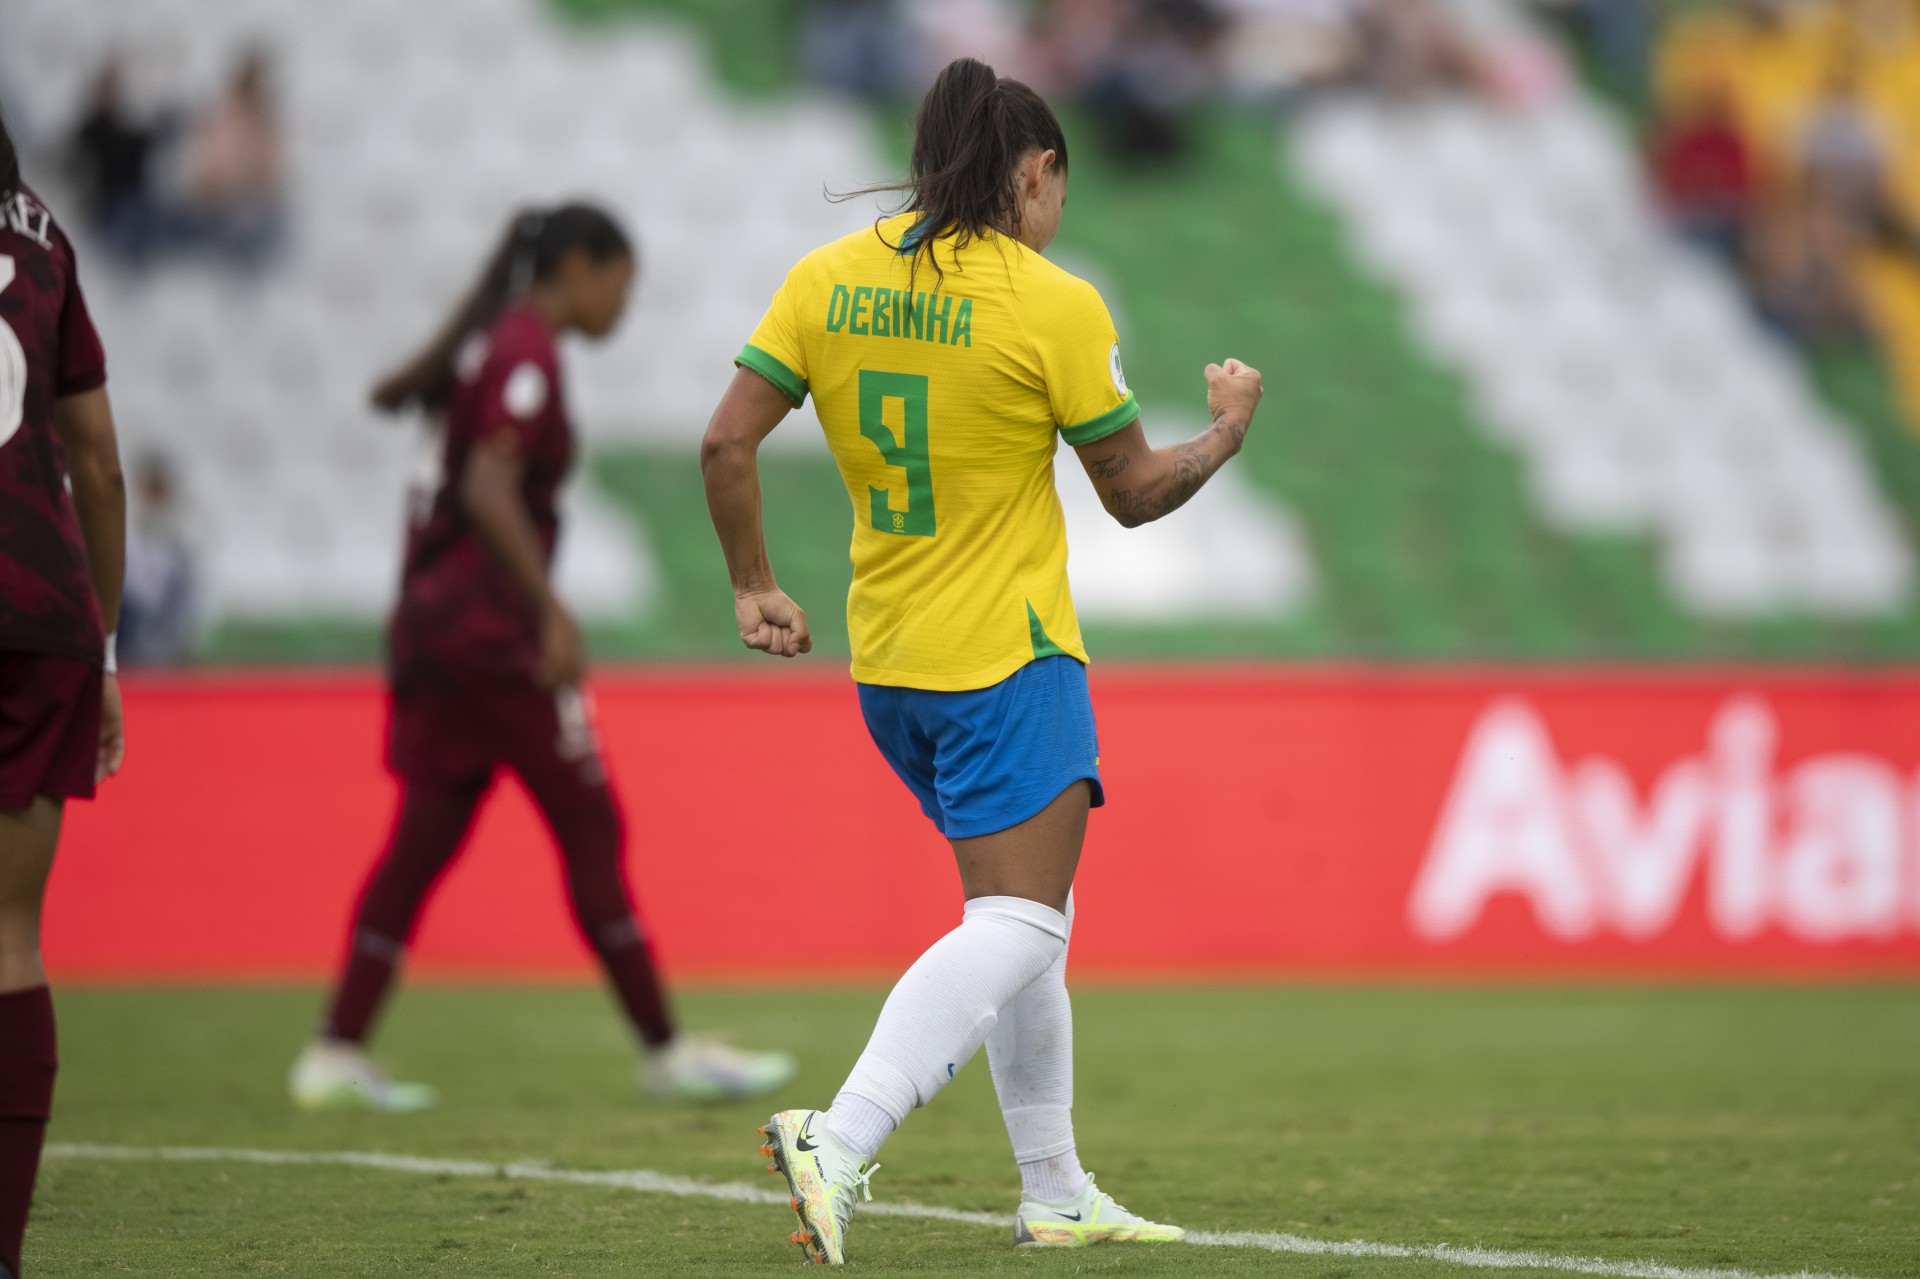 CBF Futebol on X: FIM DE JOGO! Brasil goleia novamente e garante